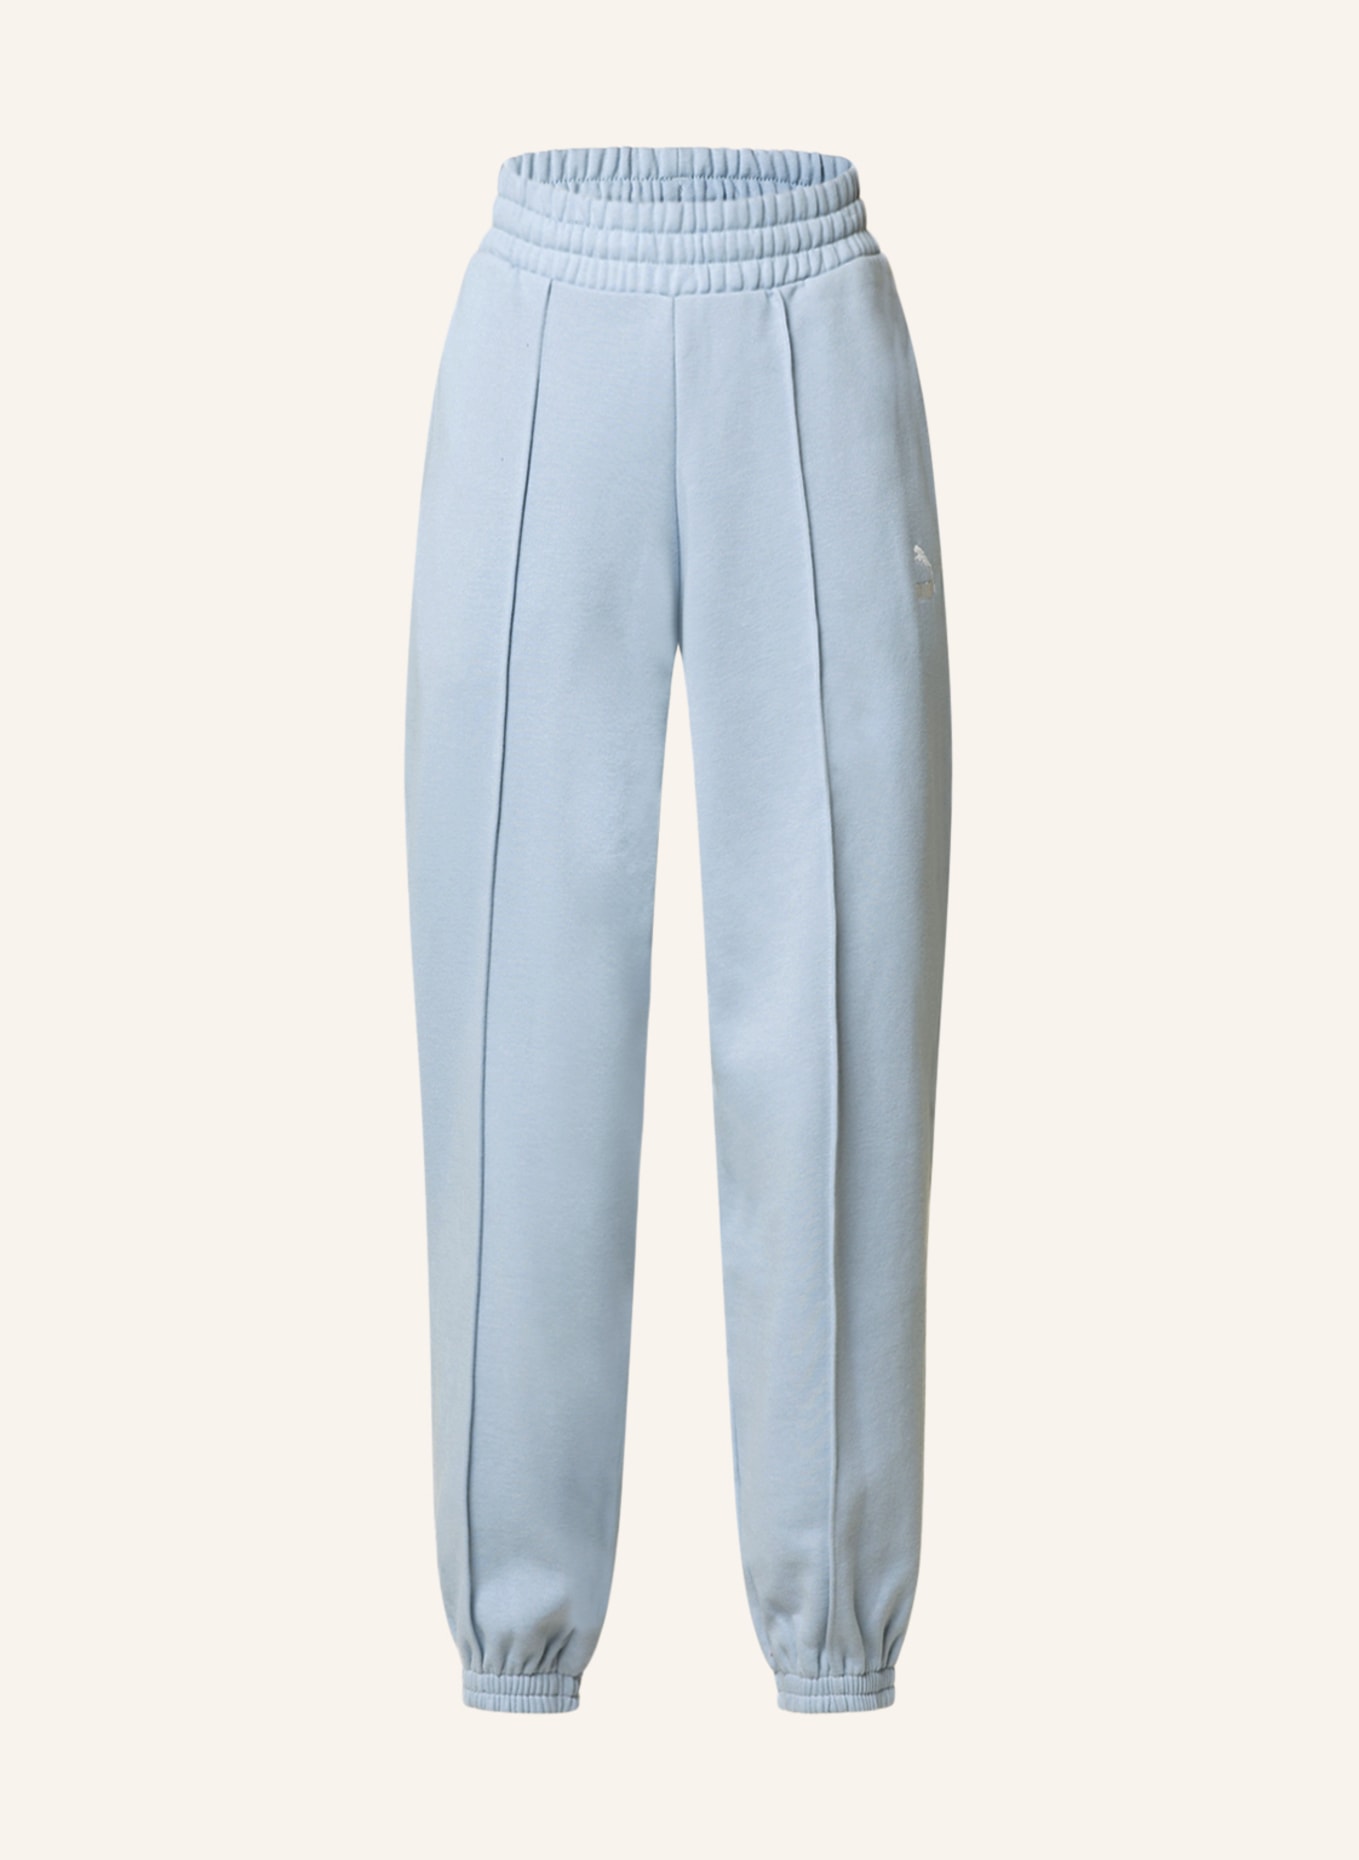 PUMA Sweatpants CLASSICS, Farbe: HELLBLAU (Bild 1)